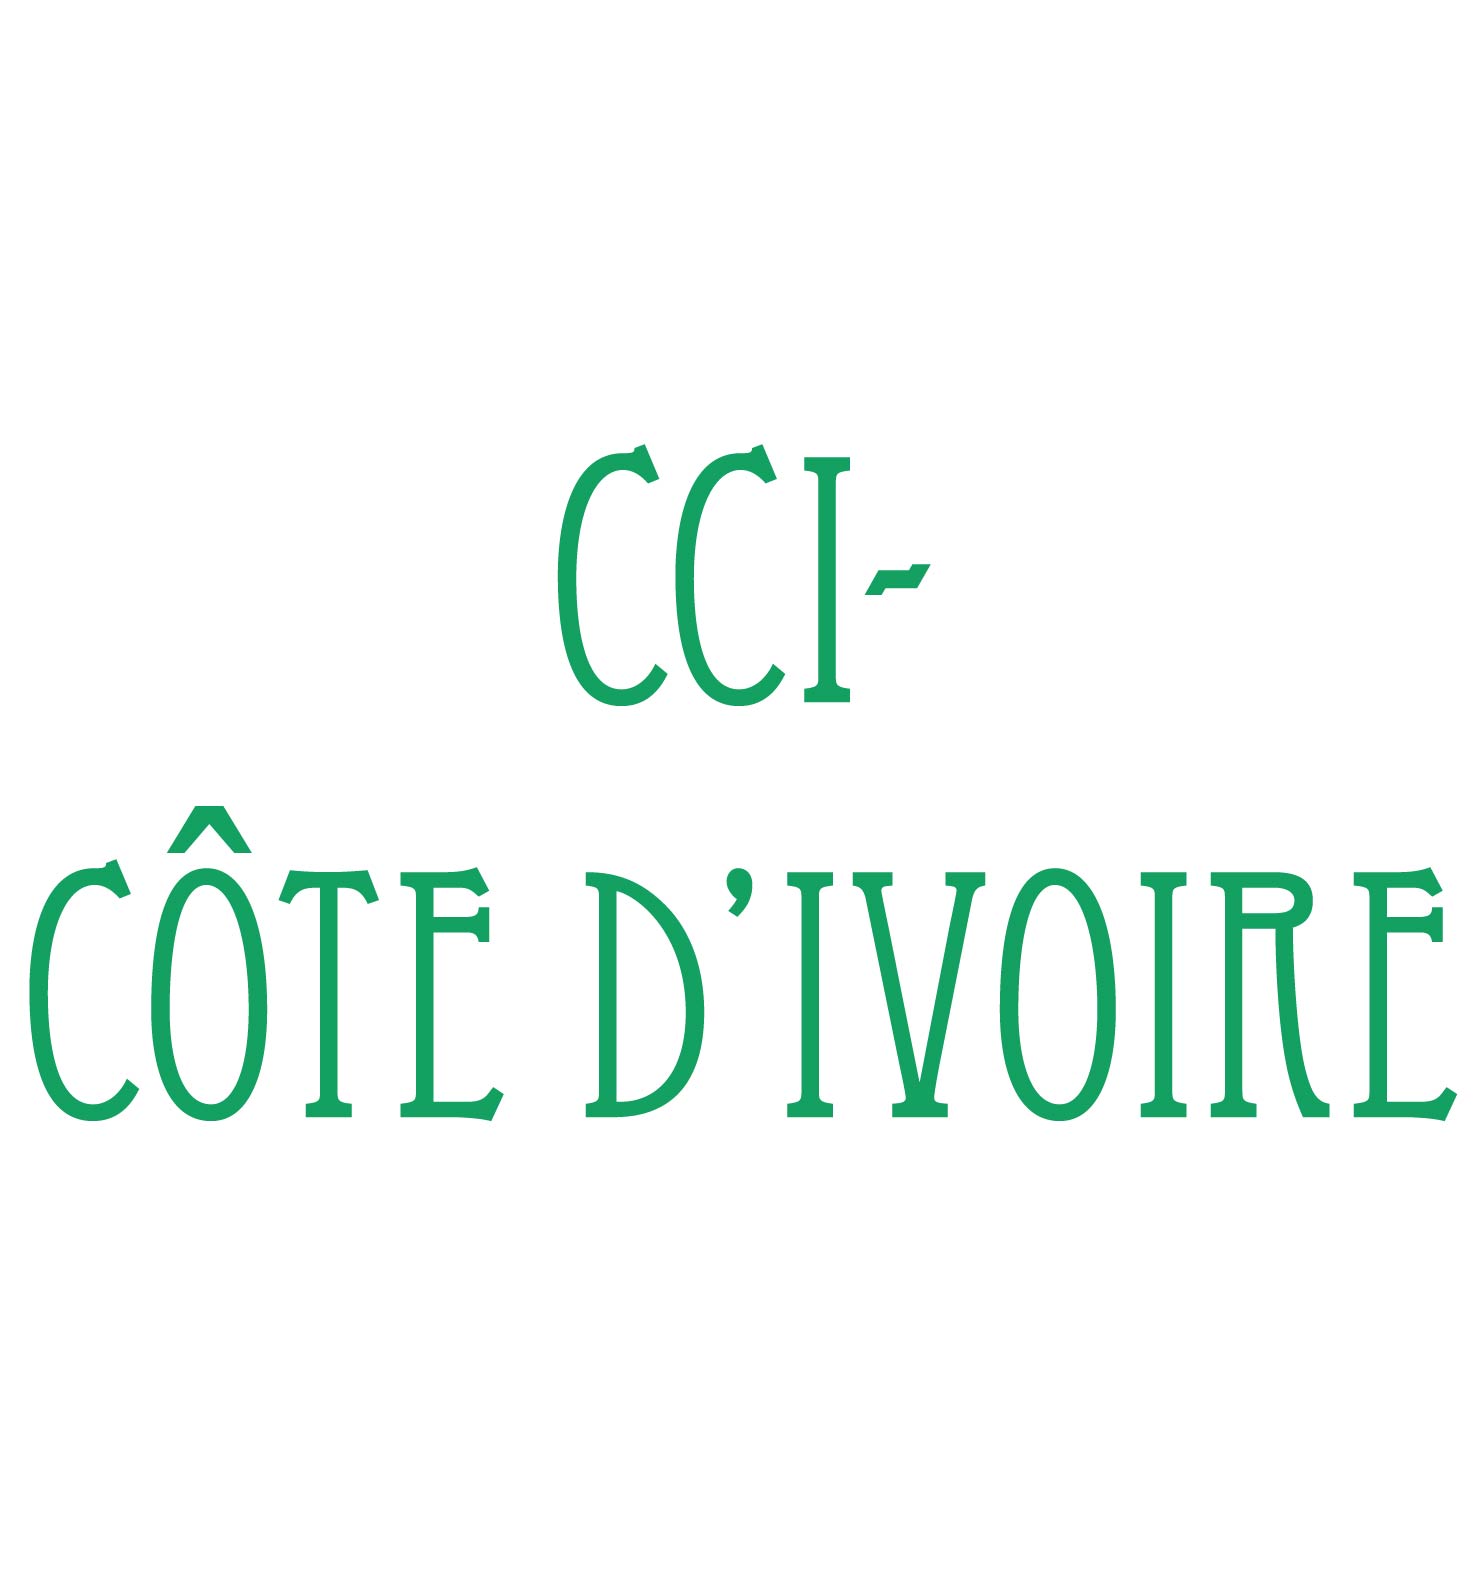 CCI-COTE D'IVOIRE.jpg